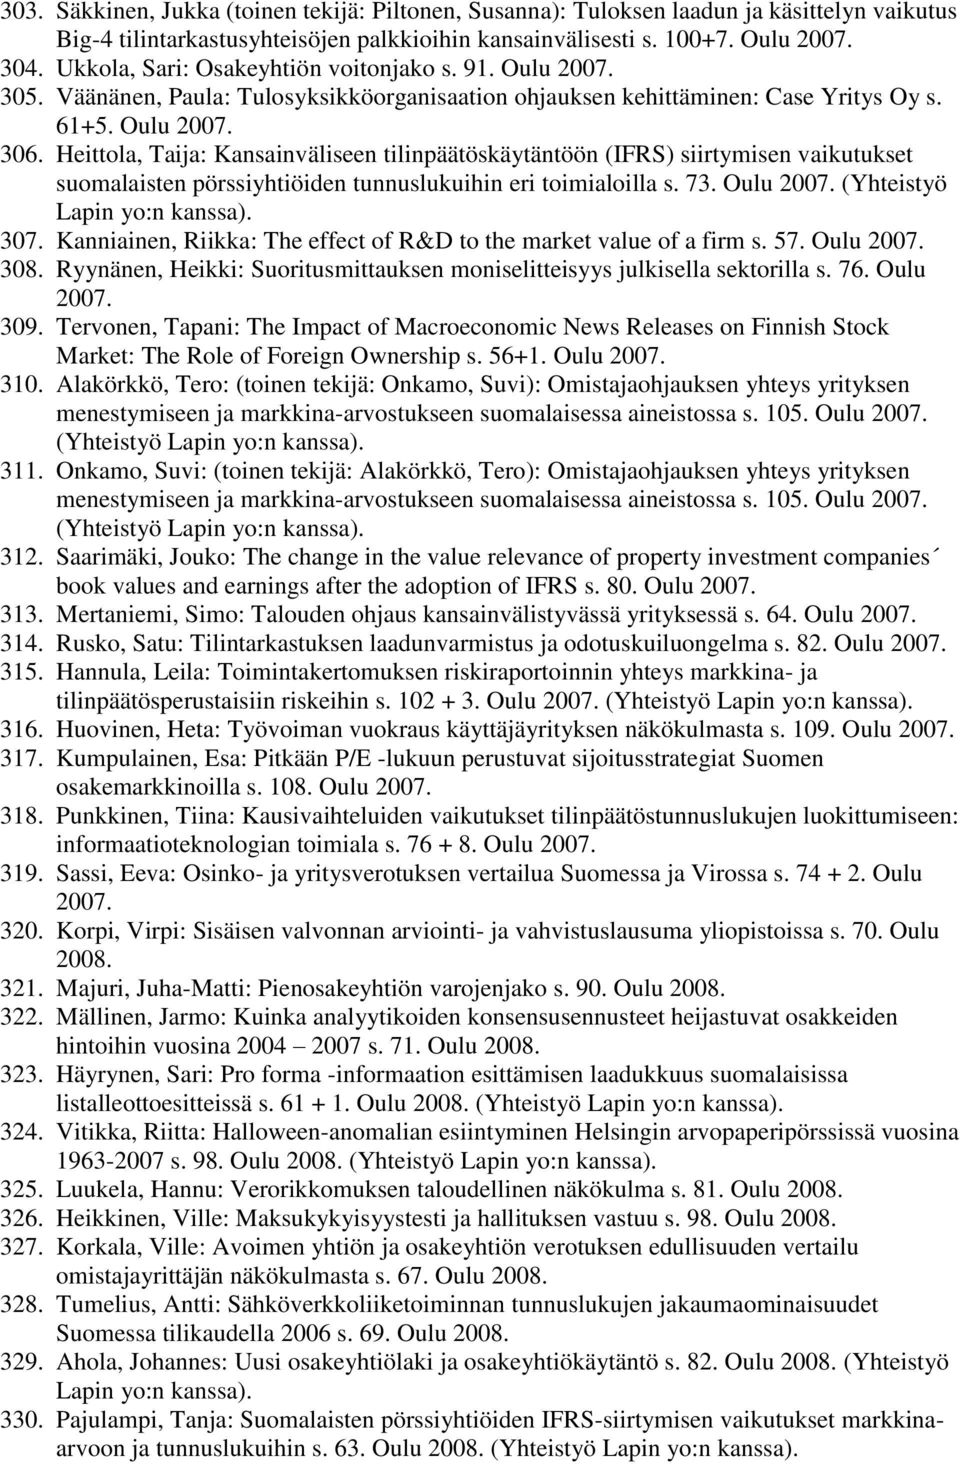 Heittola, Taija: Kansainväliseen tilinpäätöskäytäntöön (IFRS) siirtymisen vaikutukset suomalaisten pörssiyhtiöiden tunnuslukuihin eri toimialoilla s. 73. Oulu 2007. (Yhteistyö Lapin yo:n kanssa). 307.